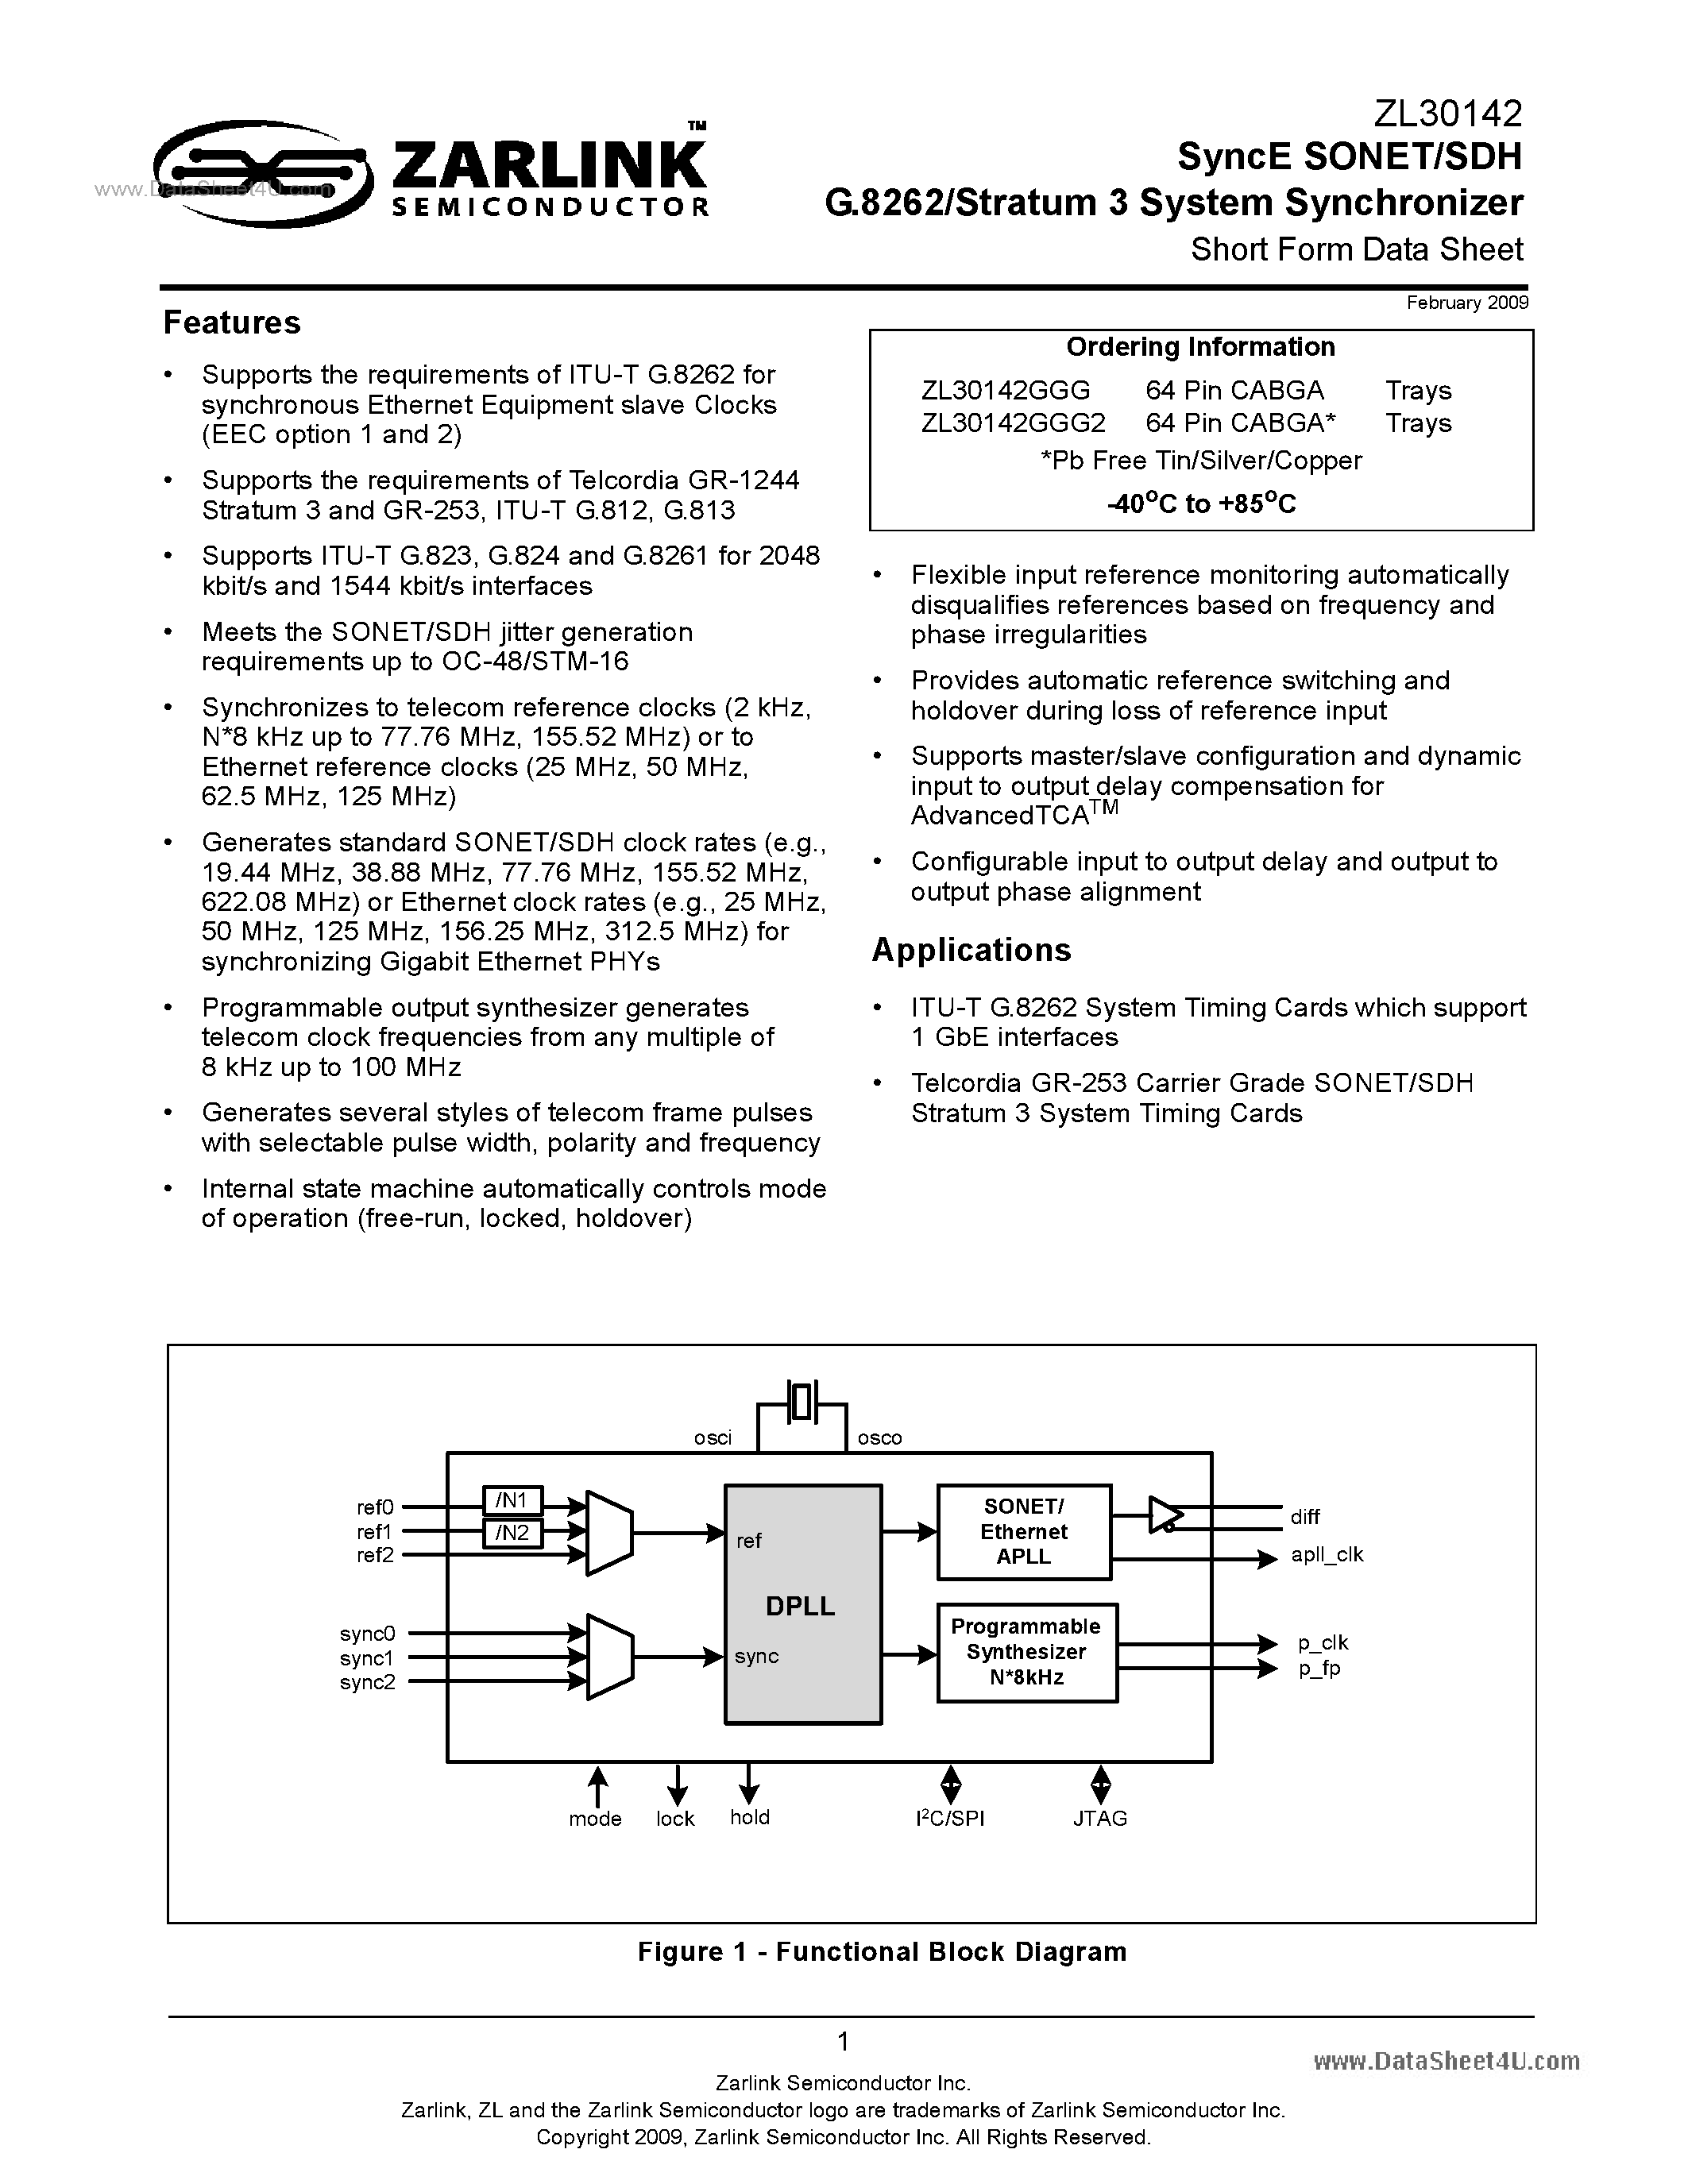 Datasheet ZL30142 - SyncE SONET/SDH G.8262/Stratum 3 System Synchronizer page 1